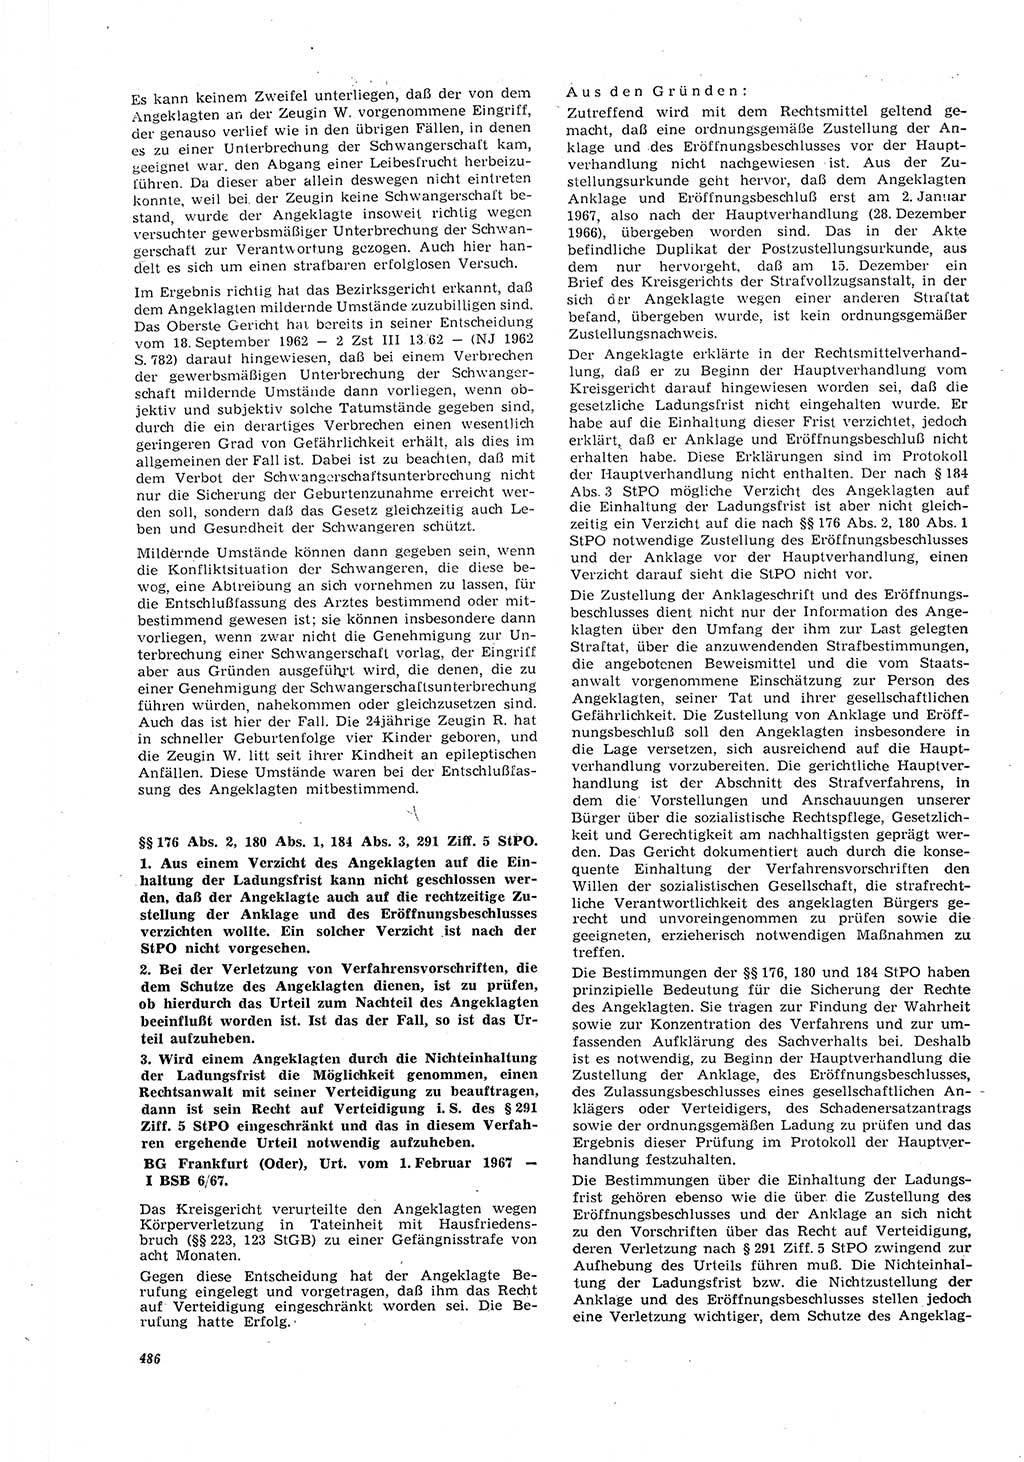 Neue Justiz (NJ), Zeitschrift für Recht und Rechtswissenschaft [Deutsche Demokratische Republik (DDR)], 21. Jahrgang 1967, Seite 486 (NJ DDR 1967, S. 486)